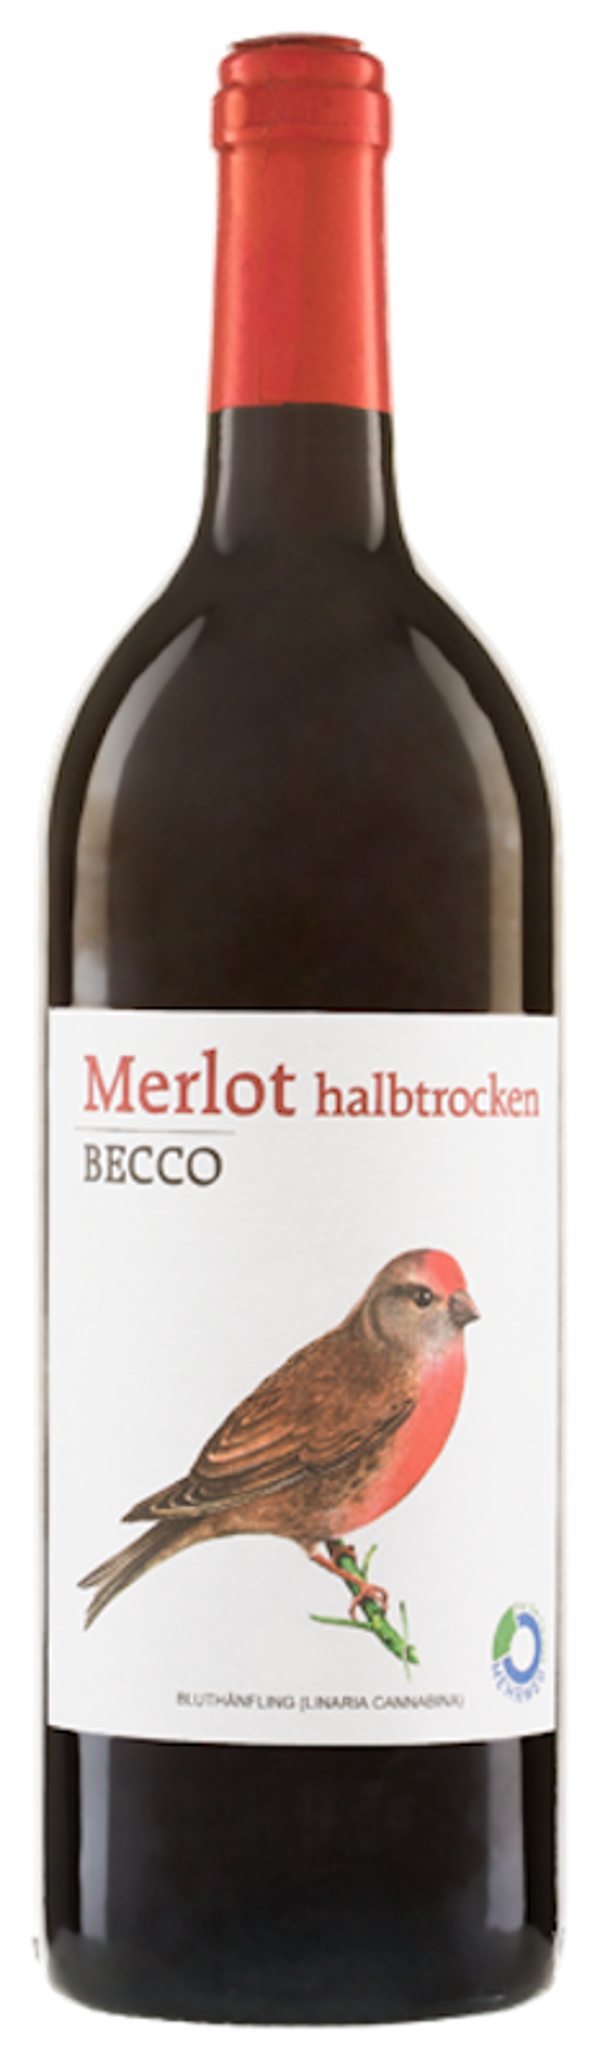 Produktfoto zu VPE Merlot Becco halbtrocken rot 6x1l Riegel Bioweine